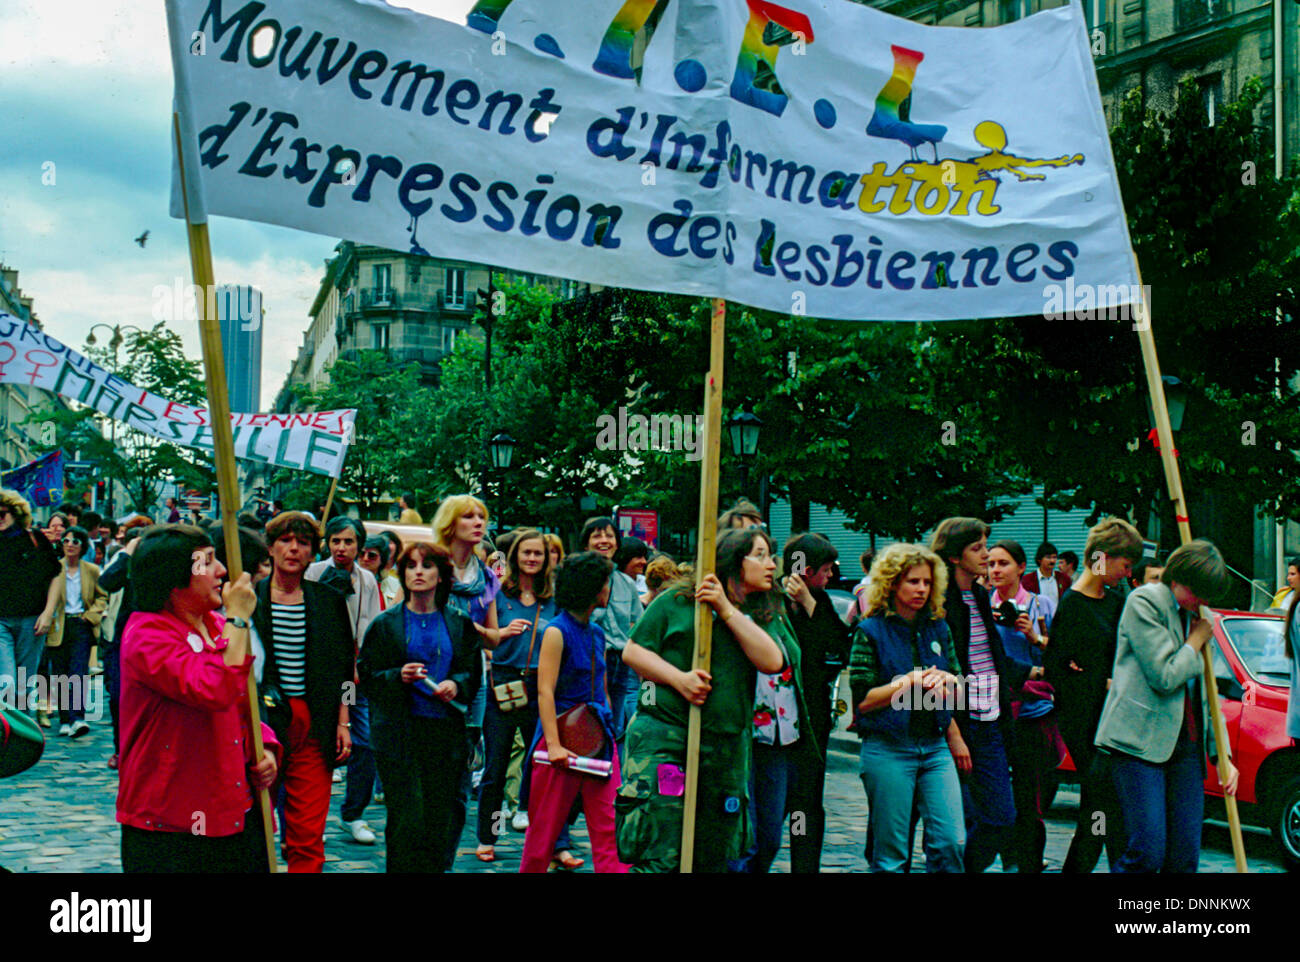 Paris, France, public français dans la rue à LGBT Activiam, gay Pride March dans les 1980s, CUARH ( Comité d'urgence anti- répression homosexuelle ) Marche des gens rue, militante de jeunesse lgbt, la marche des femmes, l'activisme des femmes, la Marche de la fierté Banque D'Images